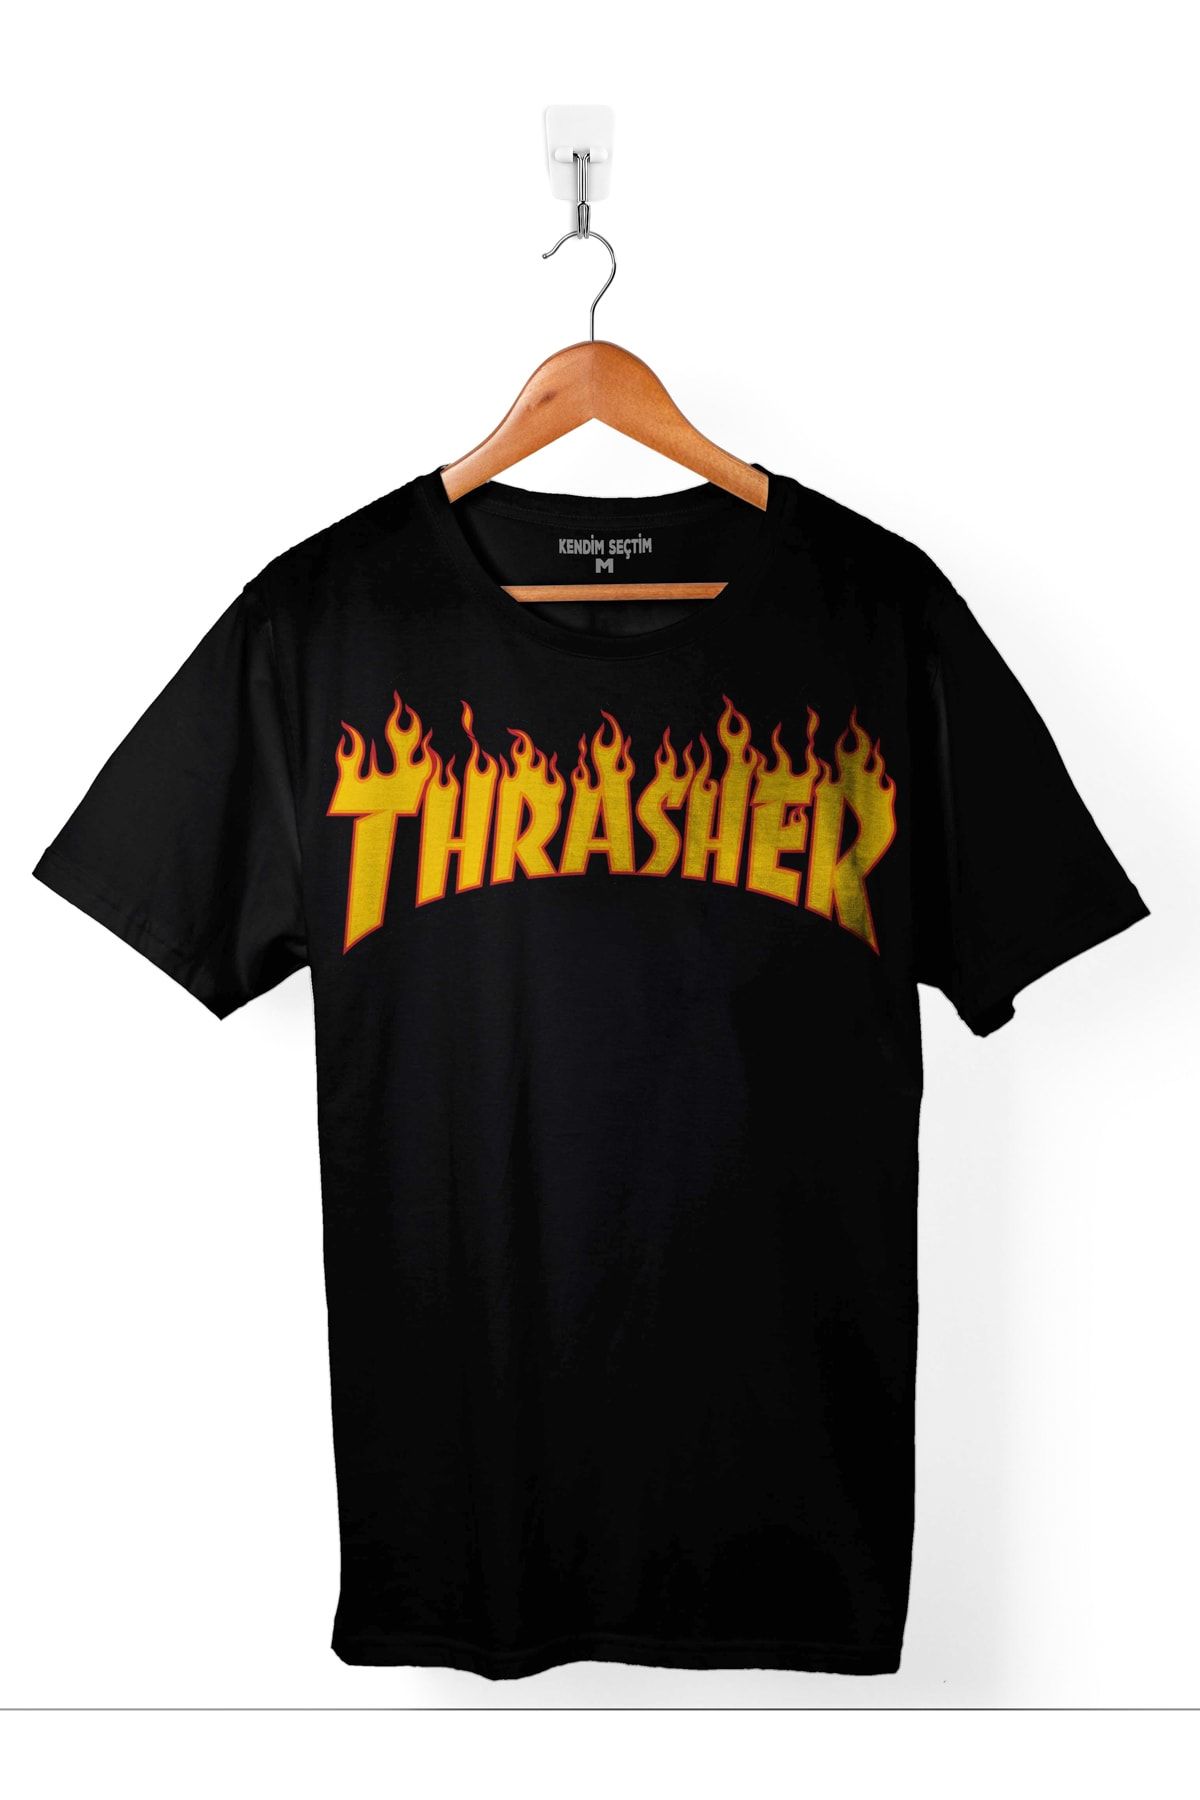 Kendim Seçtim Trasher Logo Flame Blaze Skateboard Hıp Hop Erkek Tişört